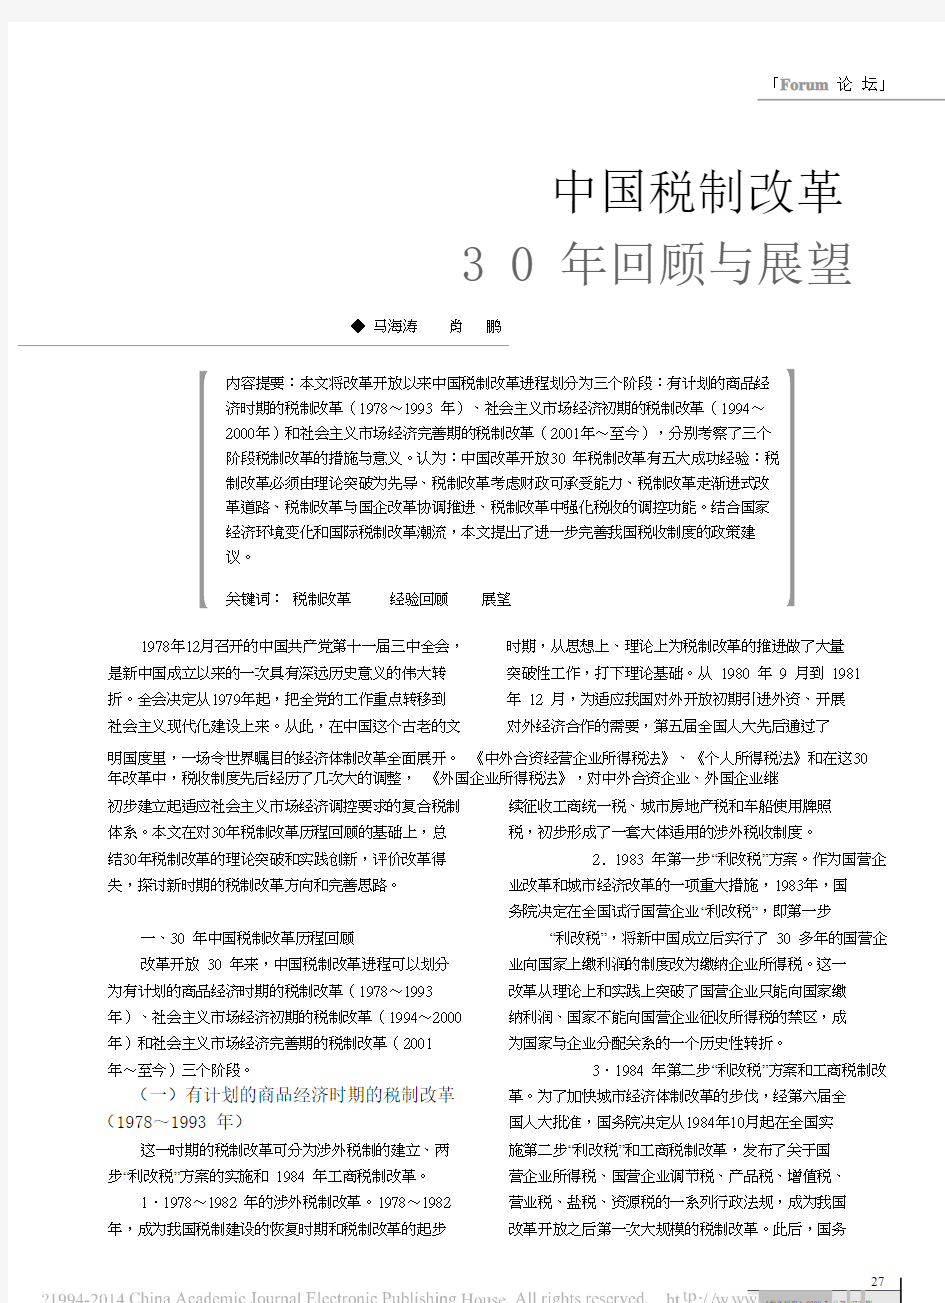 中国税制改革30年回顾与展望_马海涛